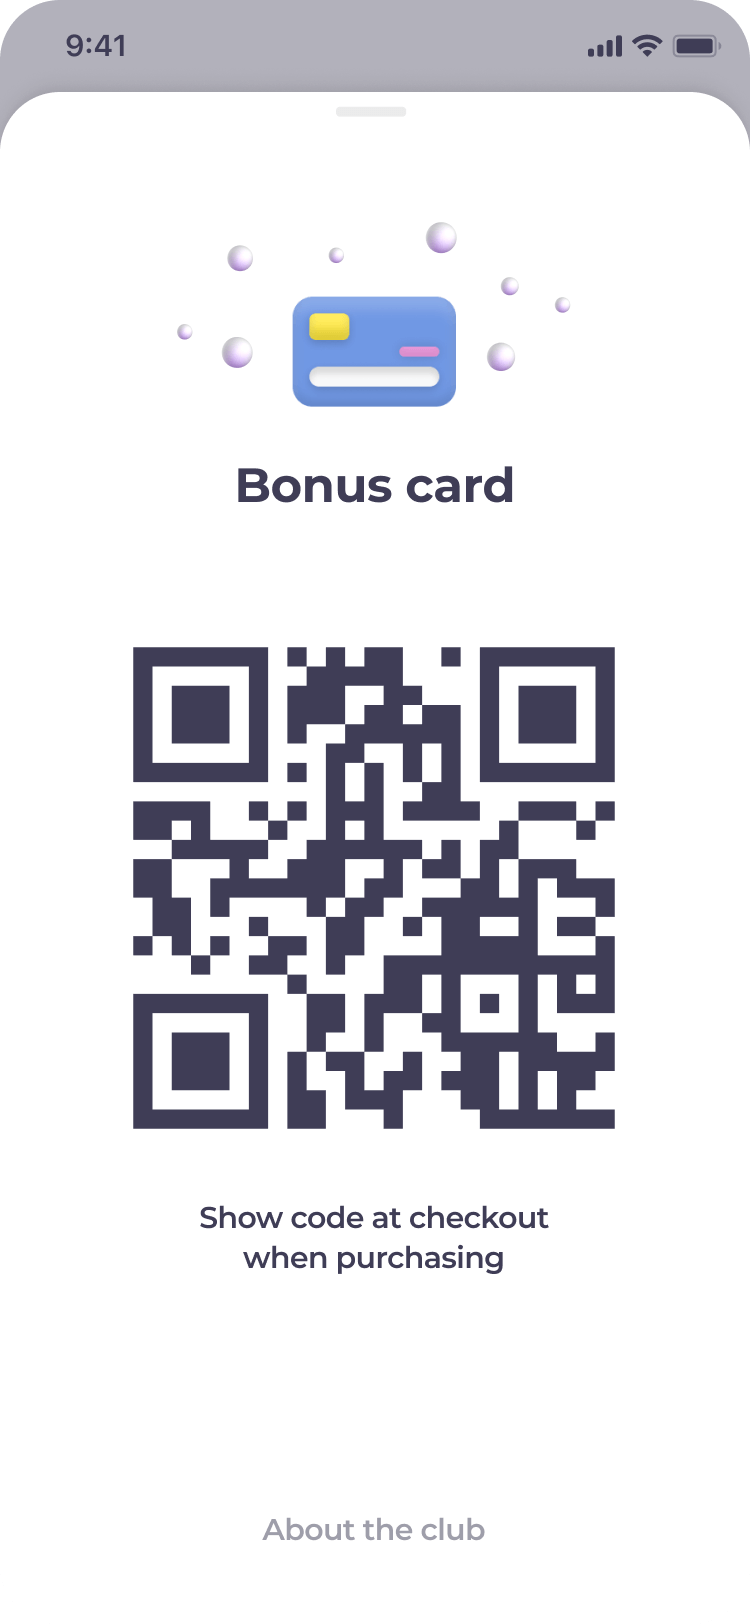 Bonus card as a QR code or Barcode